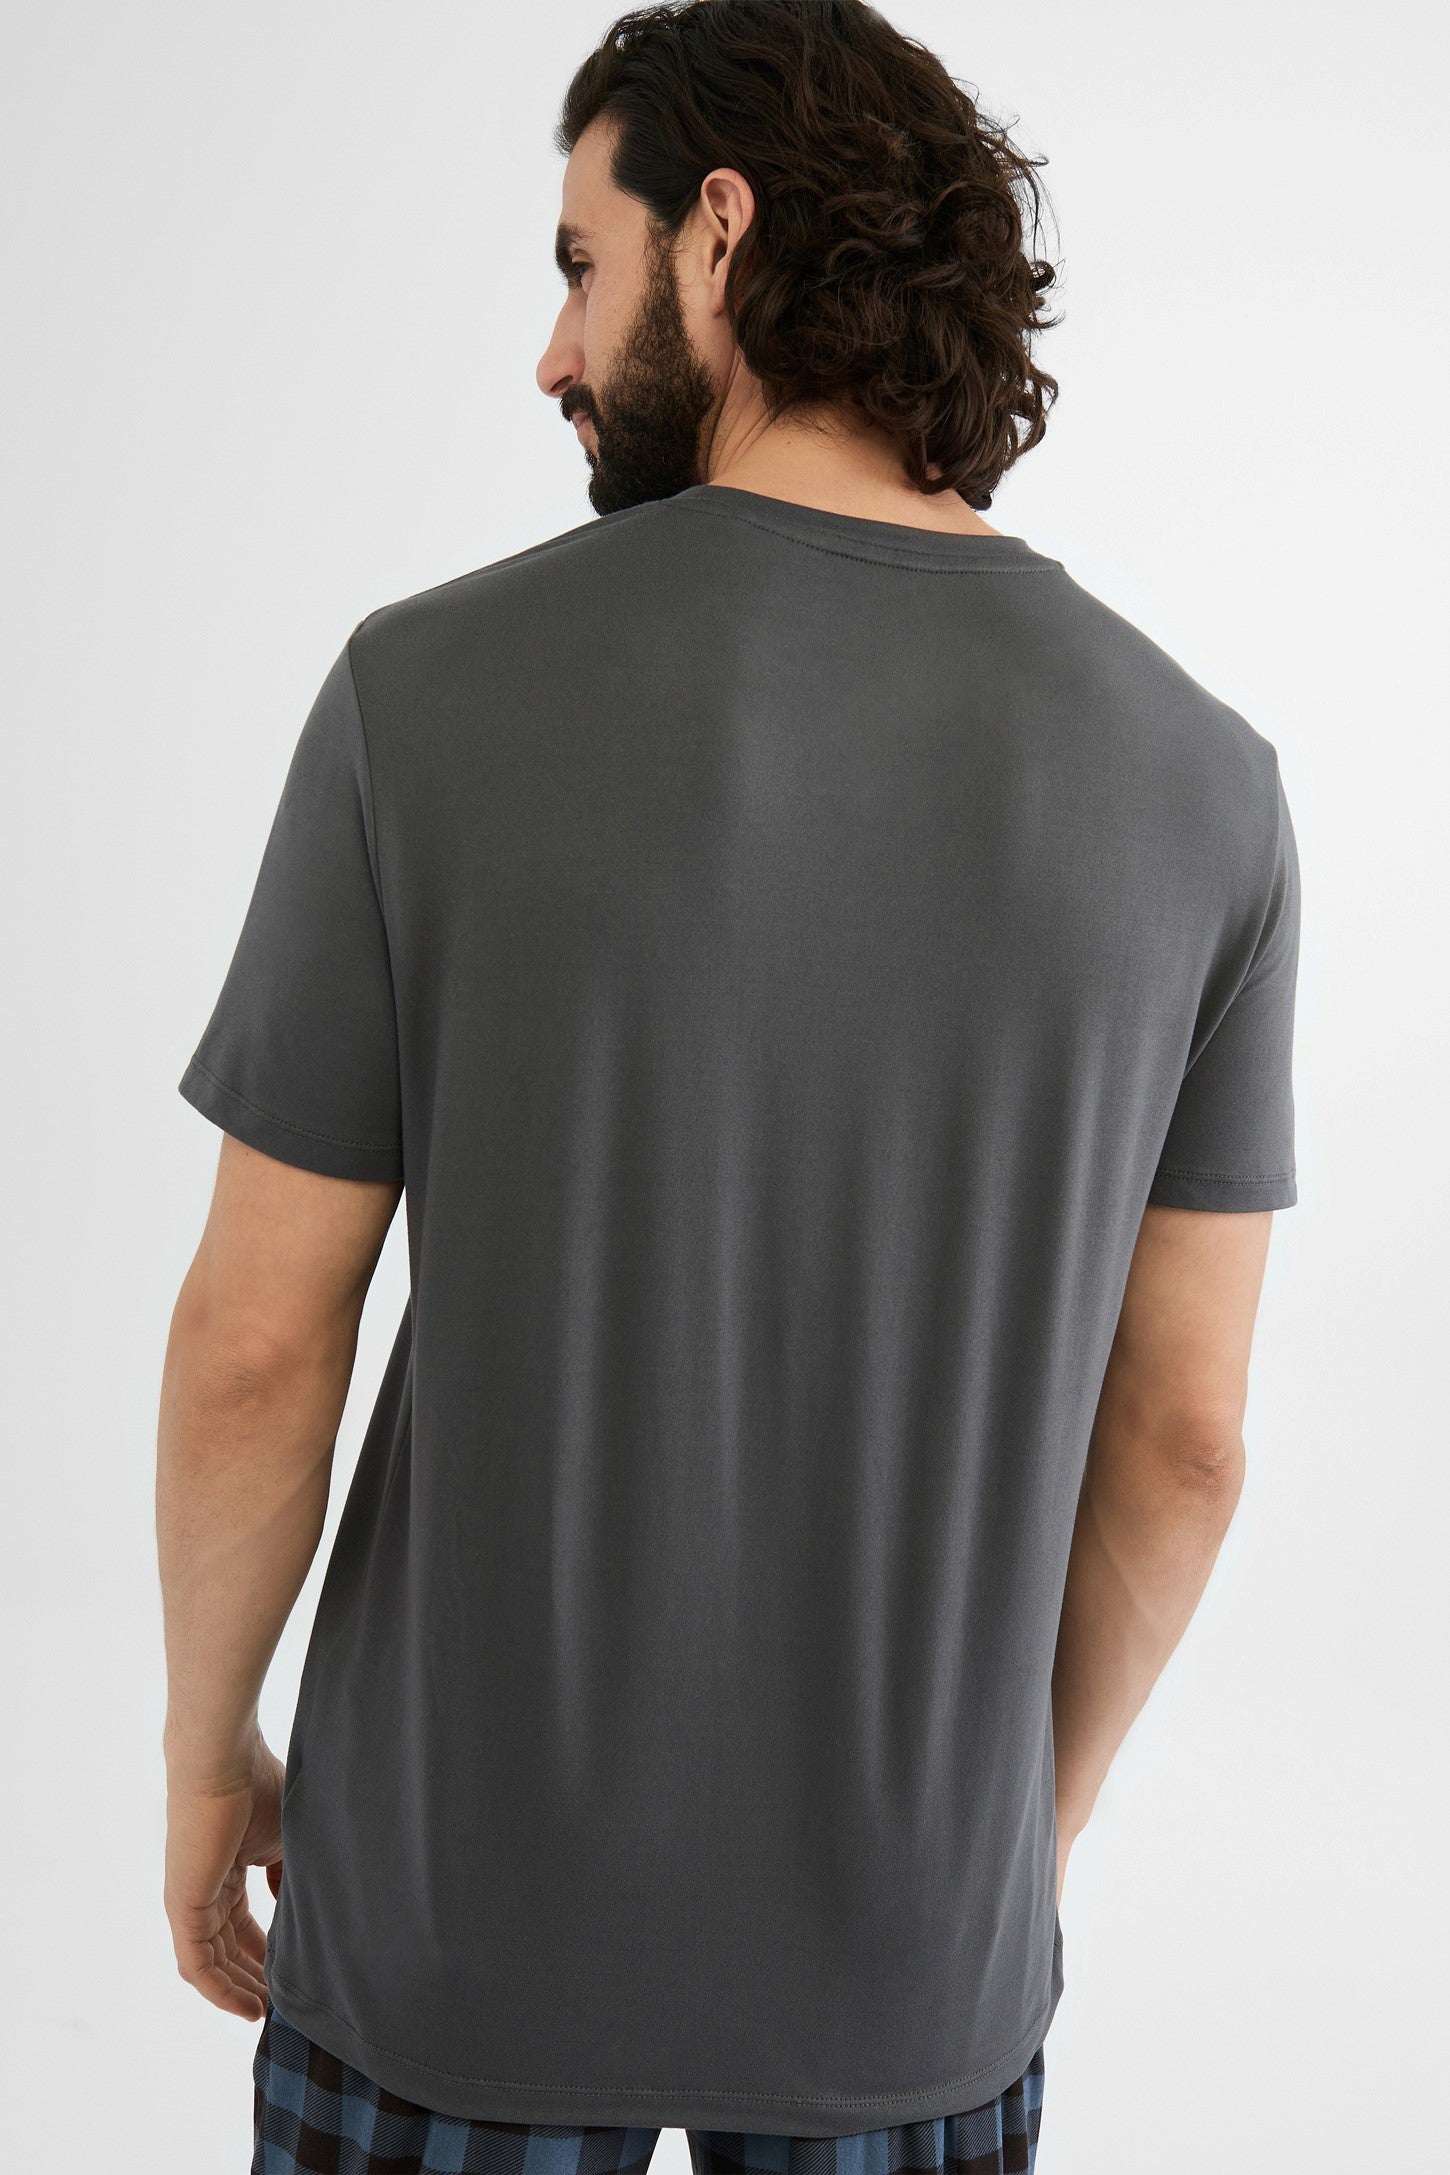 T-shirt pyjama, 2/40$ - Homme && GRIS FONCE